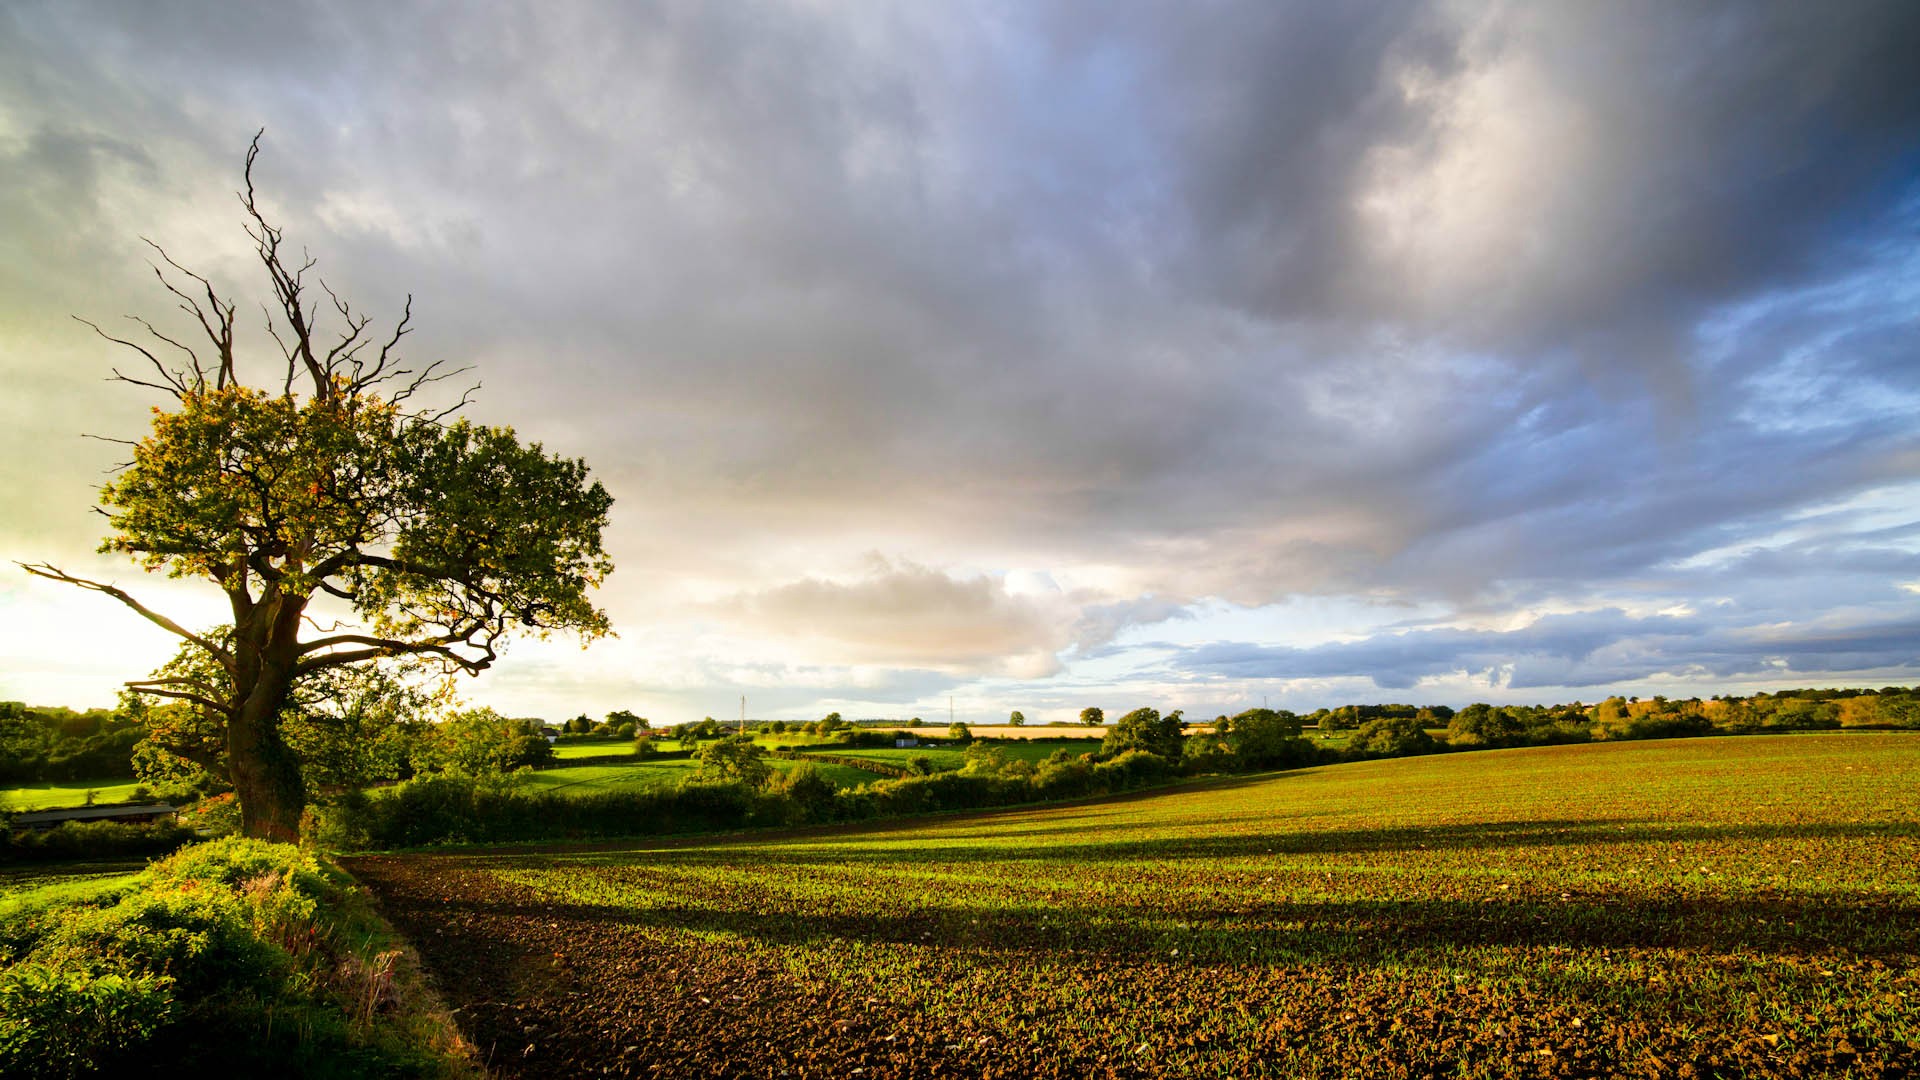 Hãy chiêm ngưỡng không gian nông thôn danh tiếng của Anh với hình nền English countryside thật đẹp mắt. Lấy cảm hứng từ cảnh quan tươi sáng, bạn sẽ cảm thấy thư thái và sảng khoái ngay từ lần đầu nhìn. Hãy để hình nền đưa bạn đến với các ngôi làng truyền thống với những đồi cỏ xanh tươi.